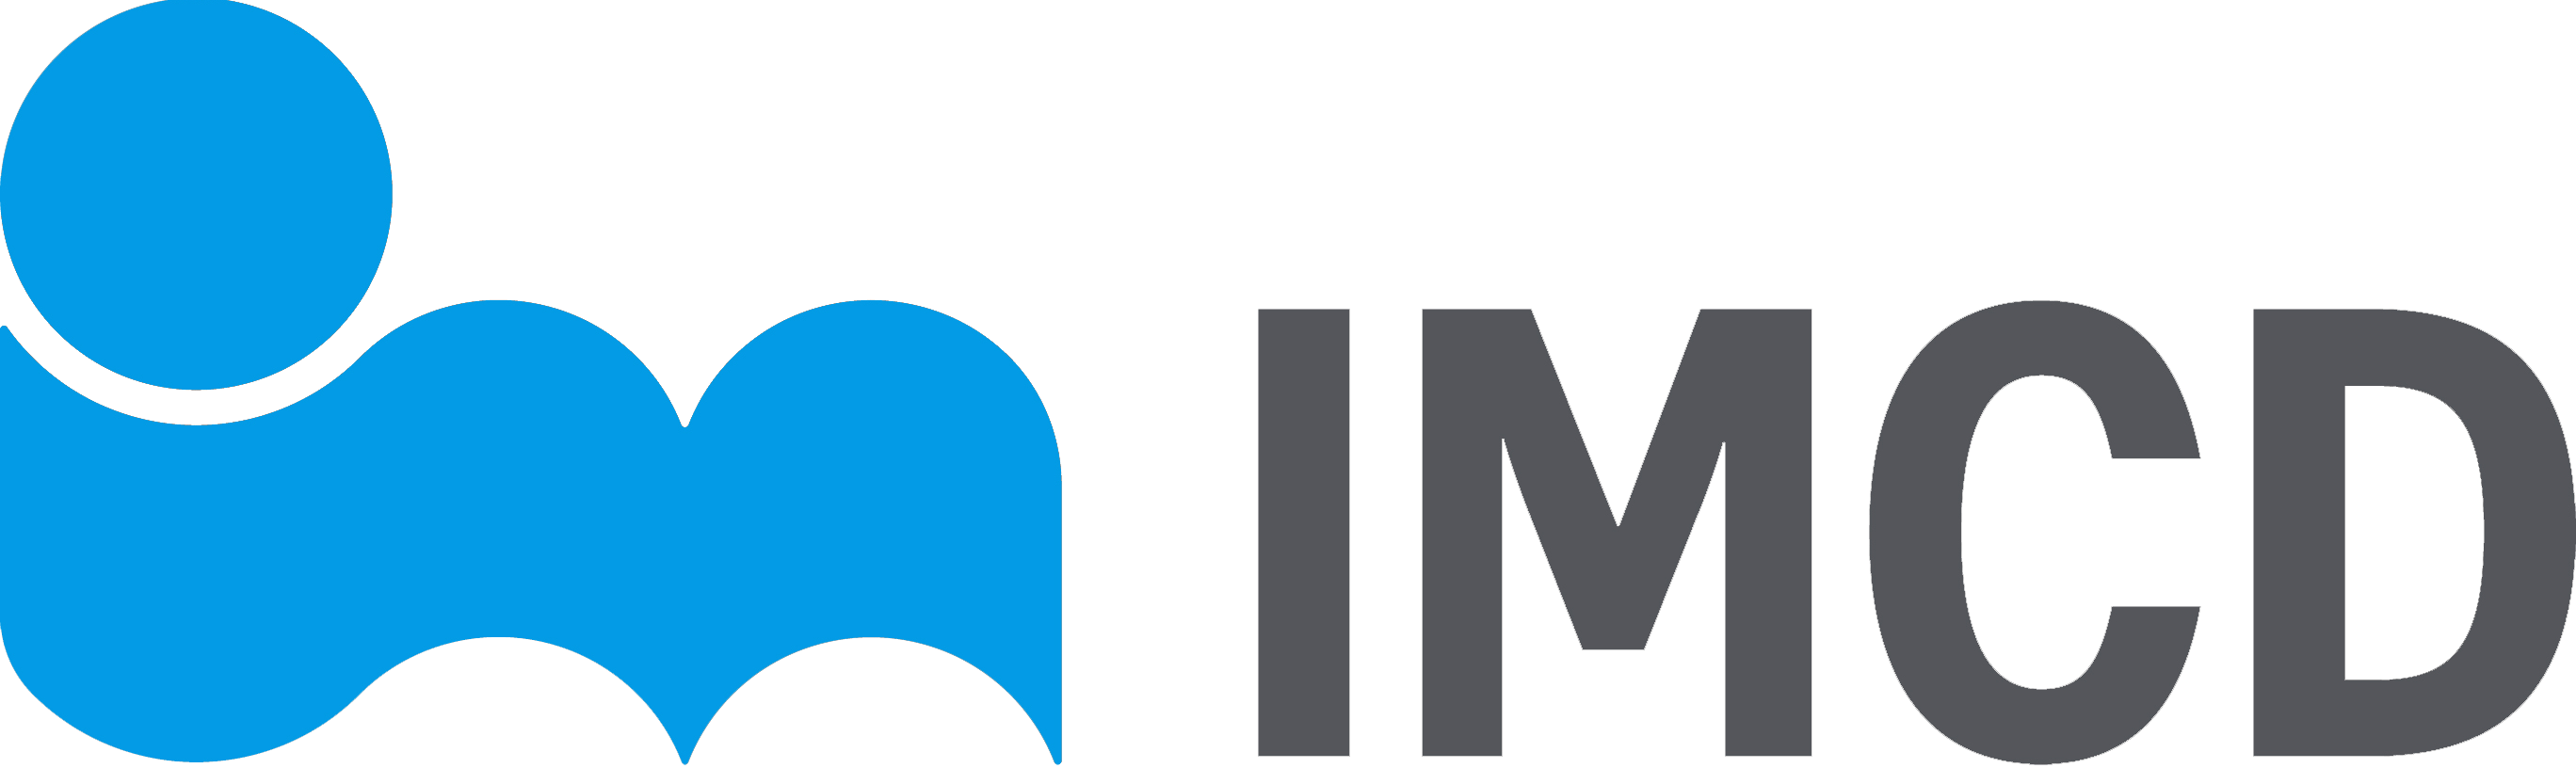 IMCD Logo